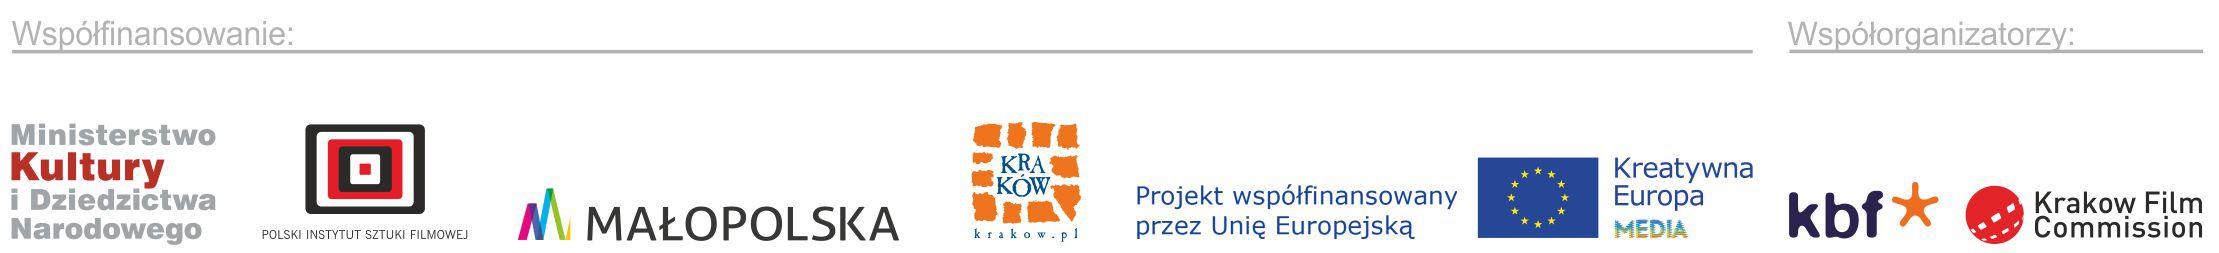 Logo Urzędów, które wsparły finansowo Plenery 2017: MKIDN PISF Urząd Miasta Krakowa Województwo Małopolskie 